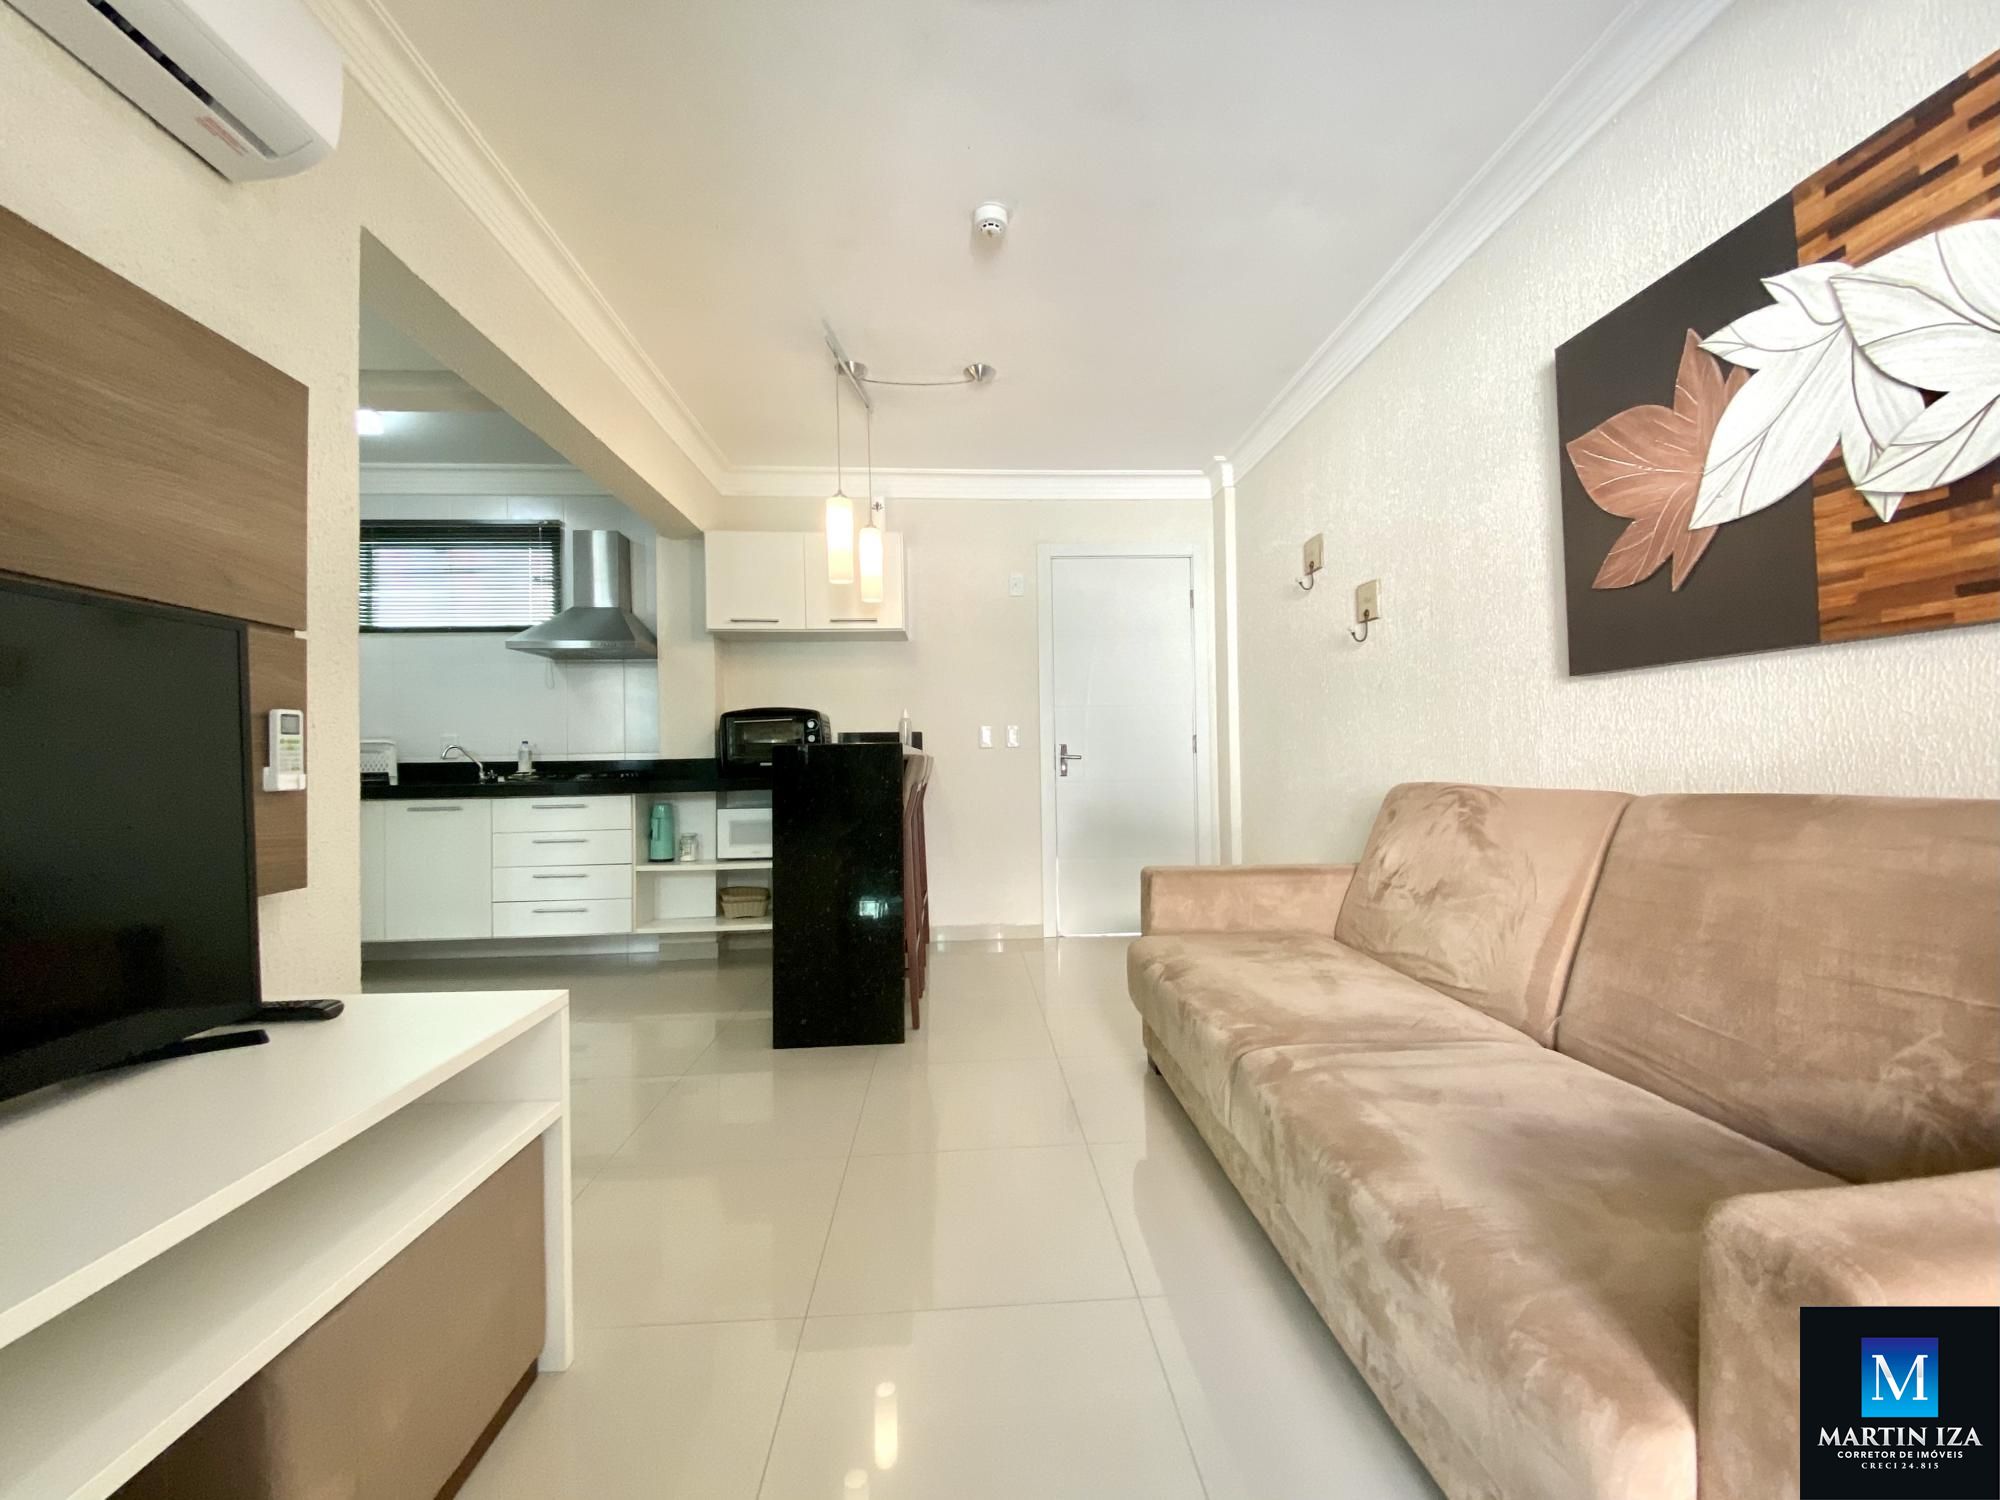 Apartamento com 1 Dormitórios para alugar, 46 m² por R$ 300,00